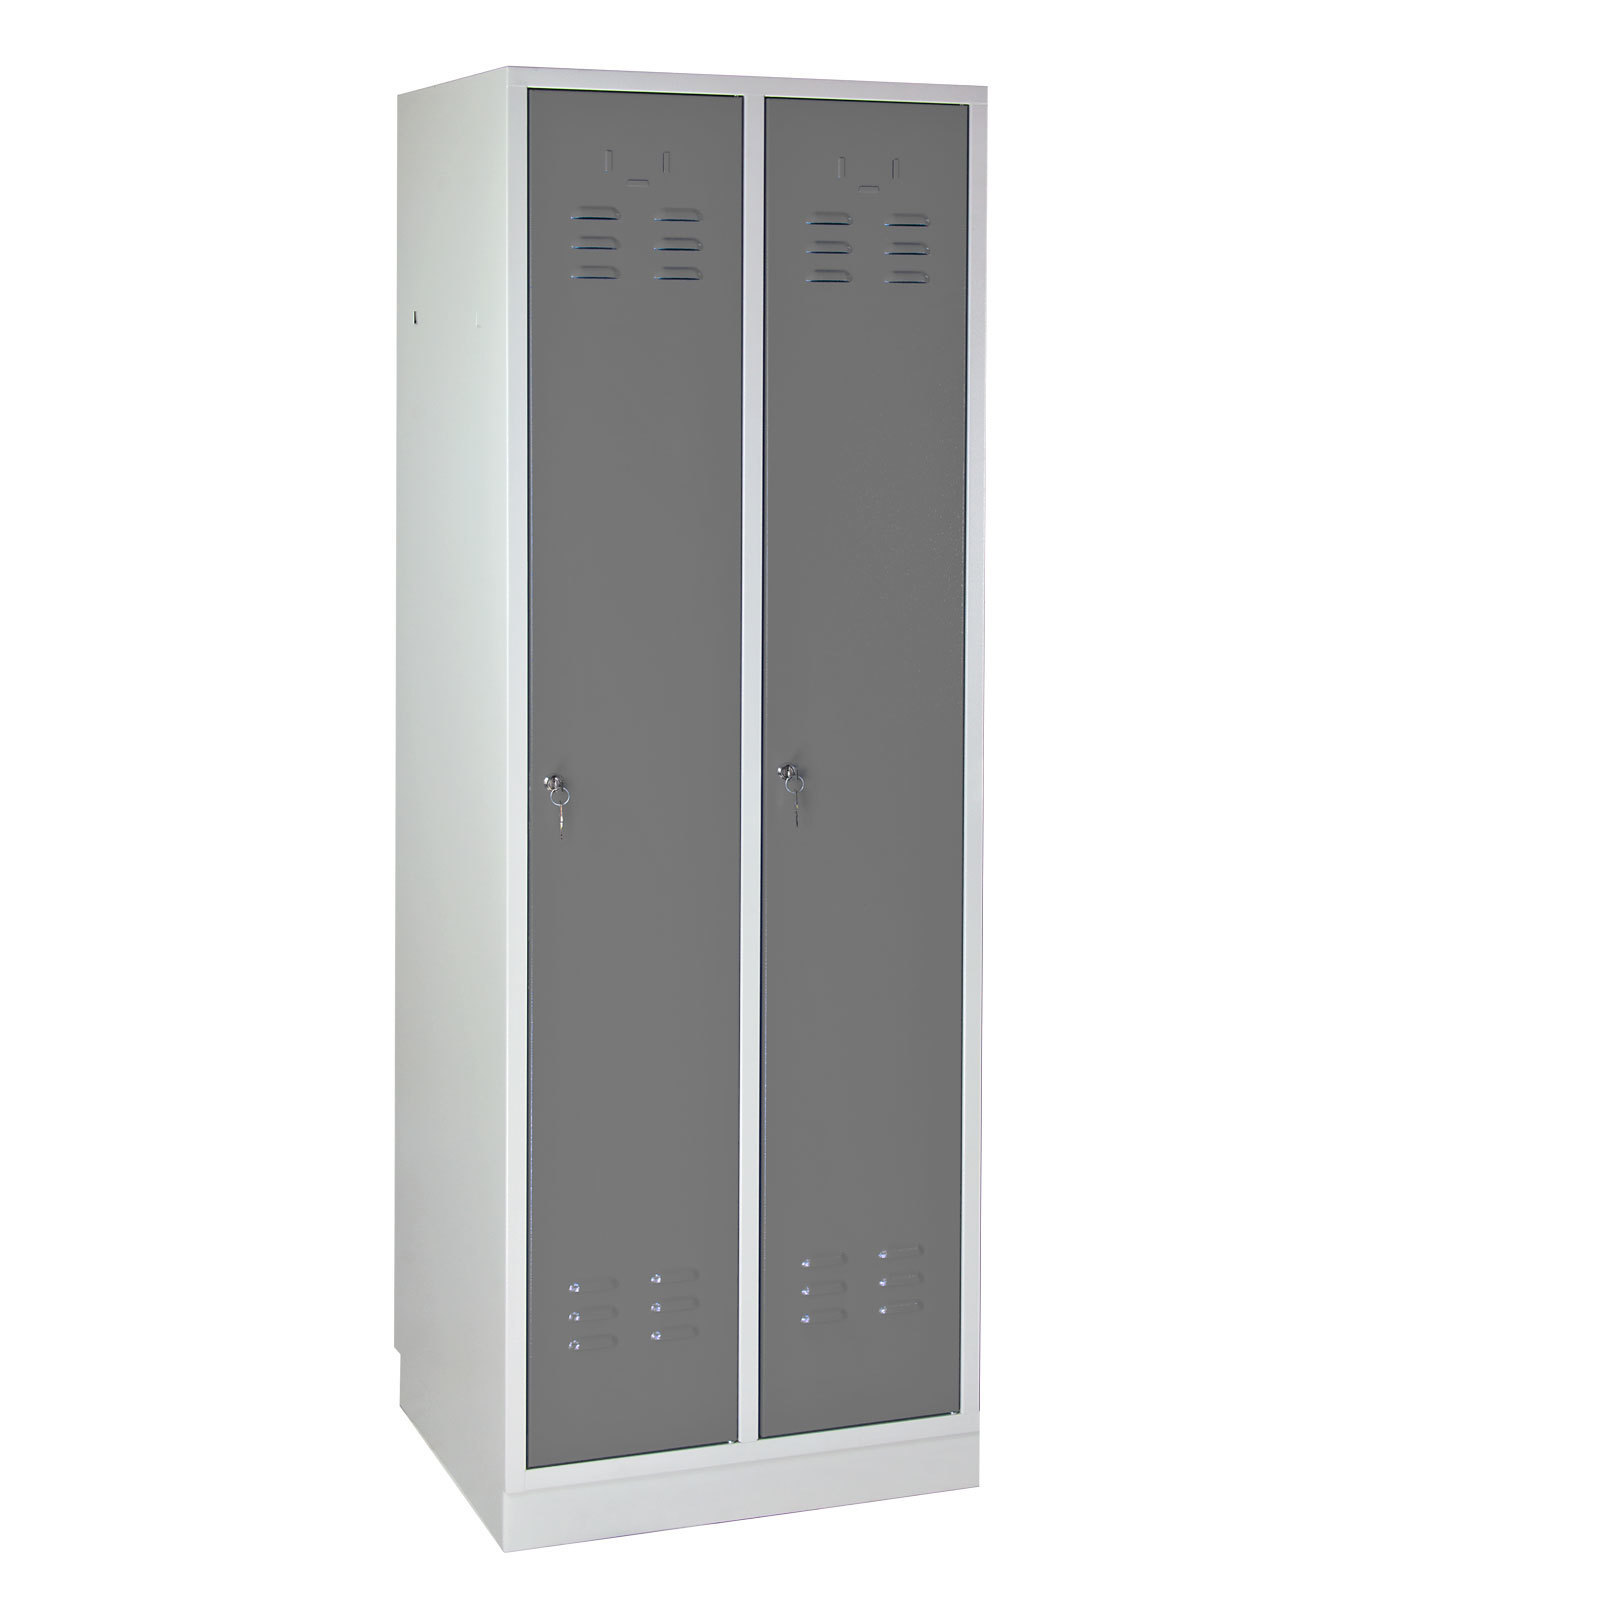 Garderobenschrank Ermine mit 2 Türen | HxBxT 178x60x50cm | Lichtgrau/Grau